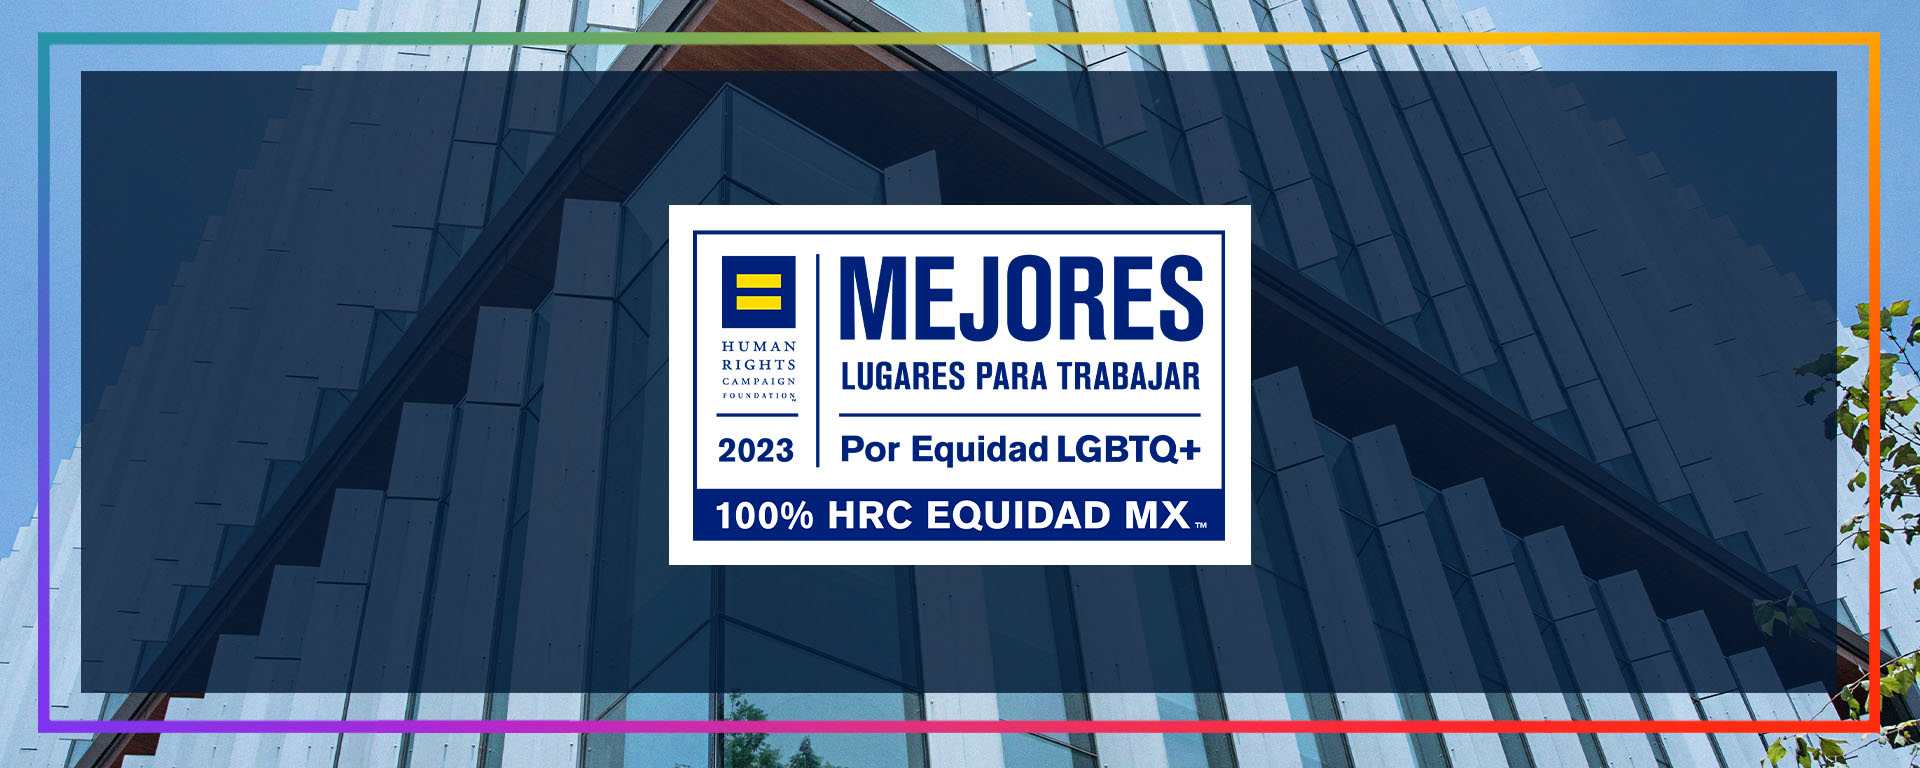 Certificación al Tec de Monterrey como uno de los Mejores lugares para trabajar por Diversidad e Inclusión.